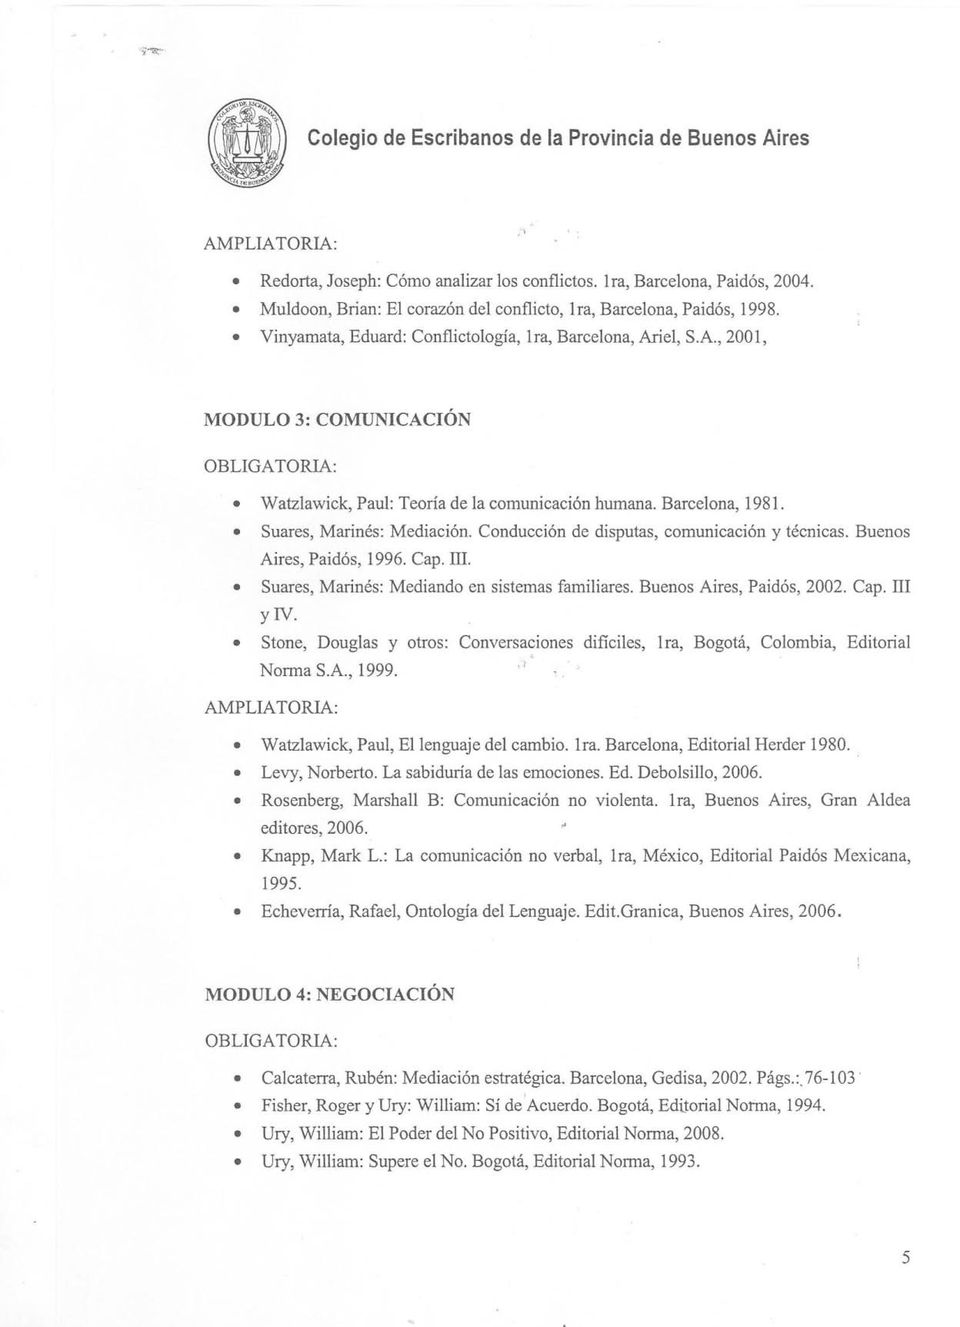 Conducción de disputas, comunicación y técnicas. Buenos Aires, Paidós, 1996. Cap. iii. Suares, Mannés: Mediando en sistemas familiares. Buenos Aires, Paidós, 2002. Cap. iii Y N.